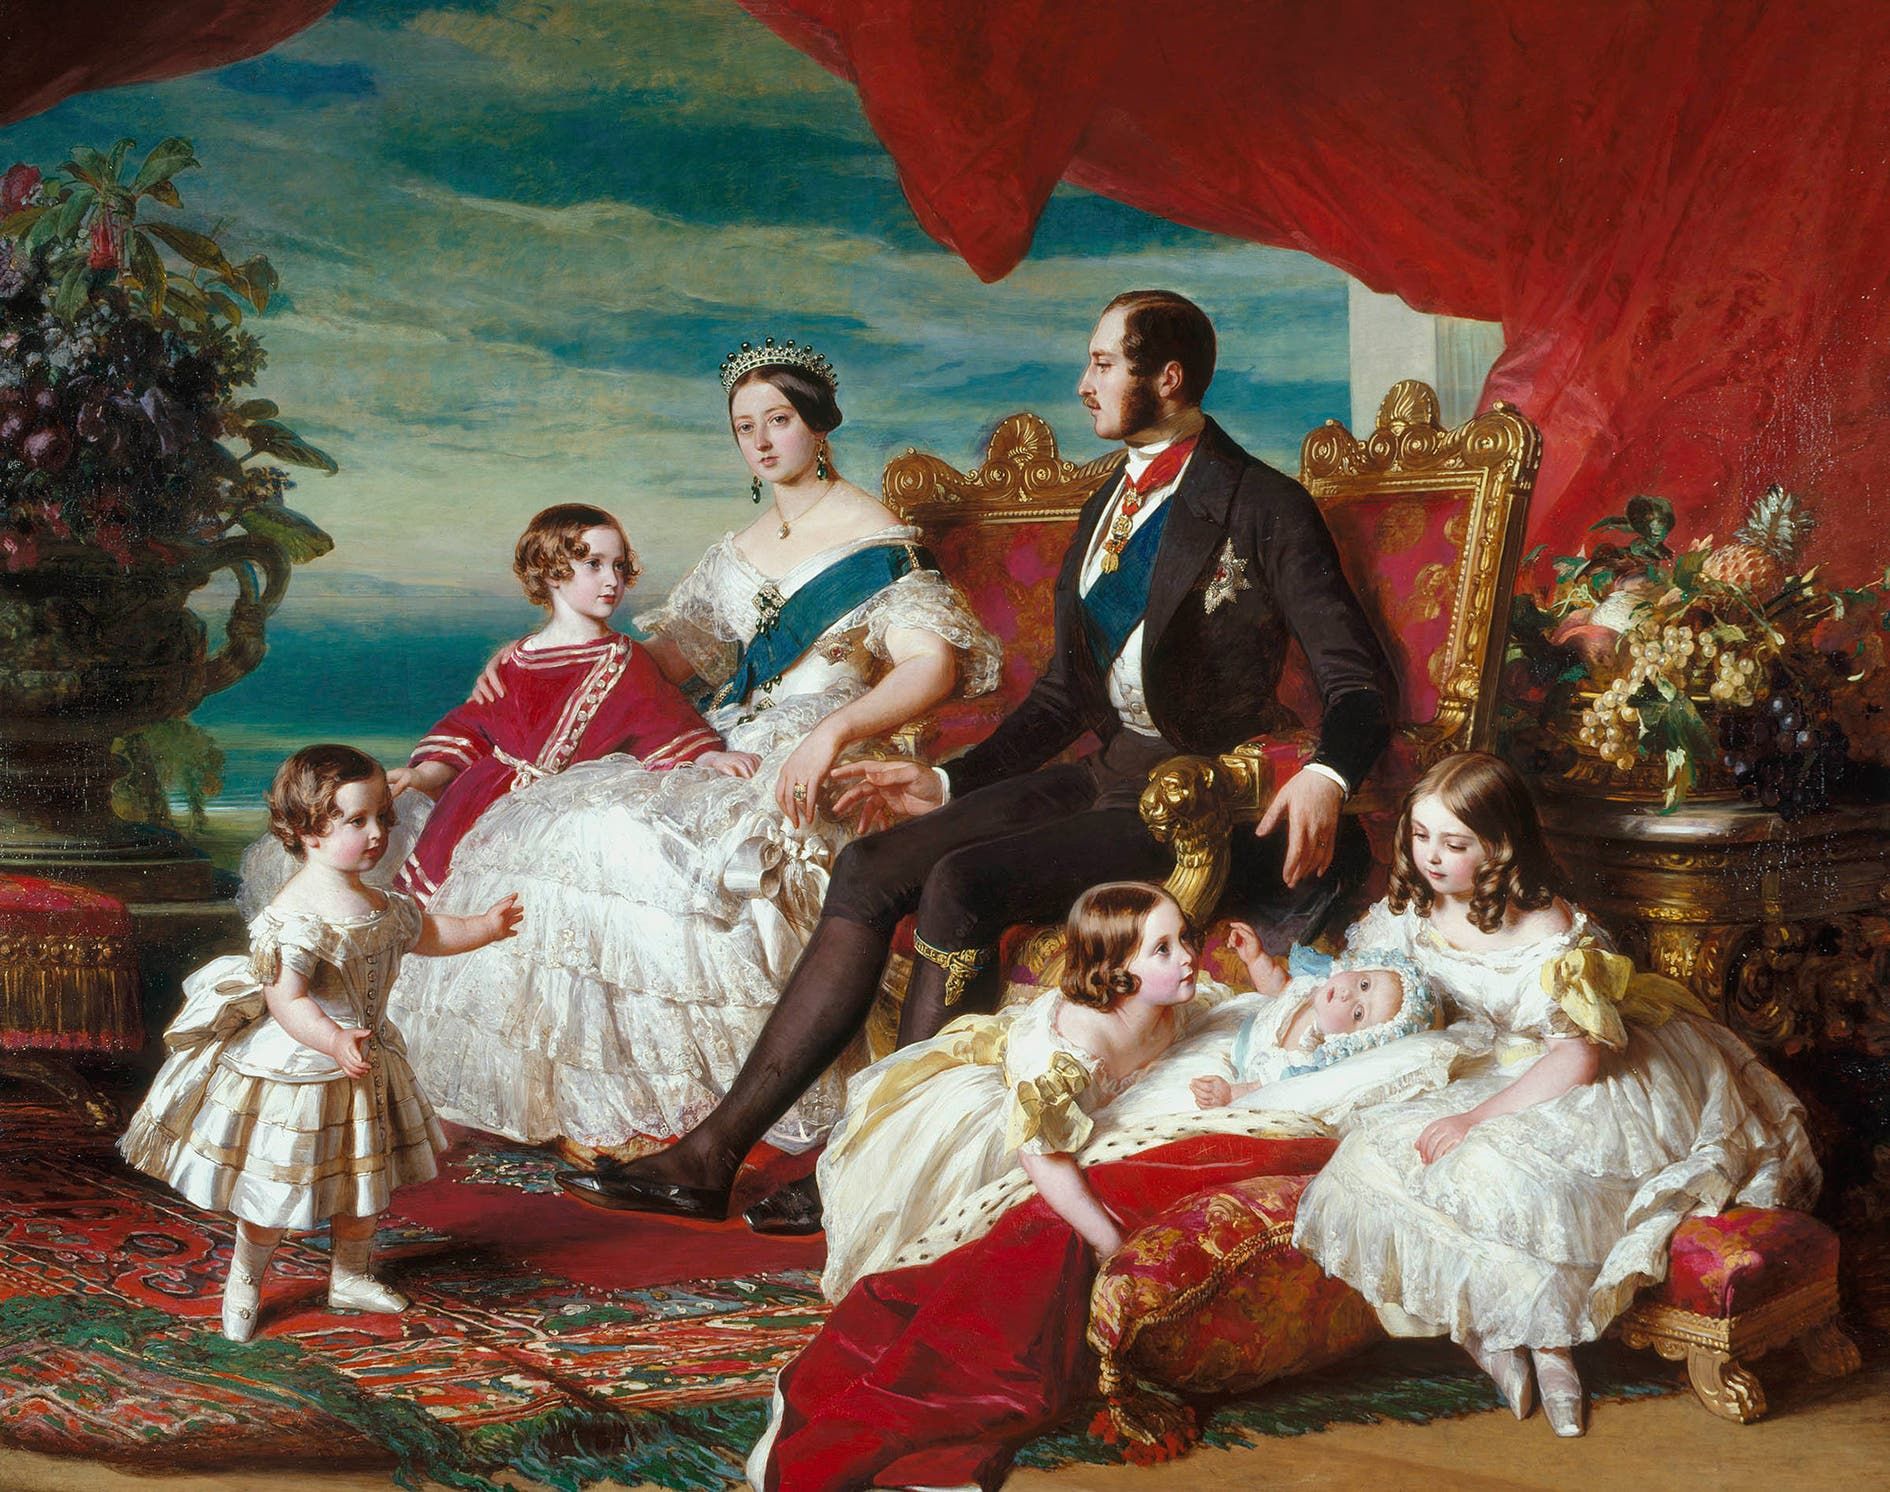 لوحة تجسد الملكة فكتوريا محاطة بزوجها الأمير ألبرت وعدد من أطفالها